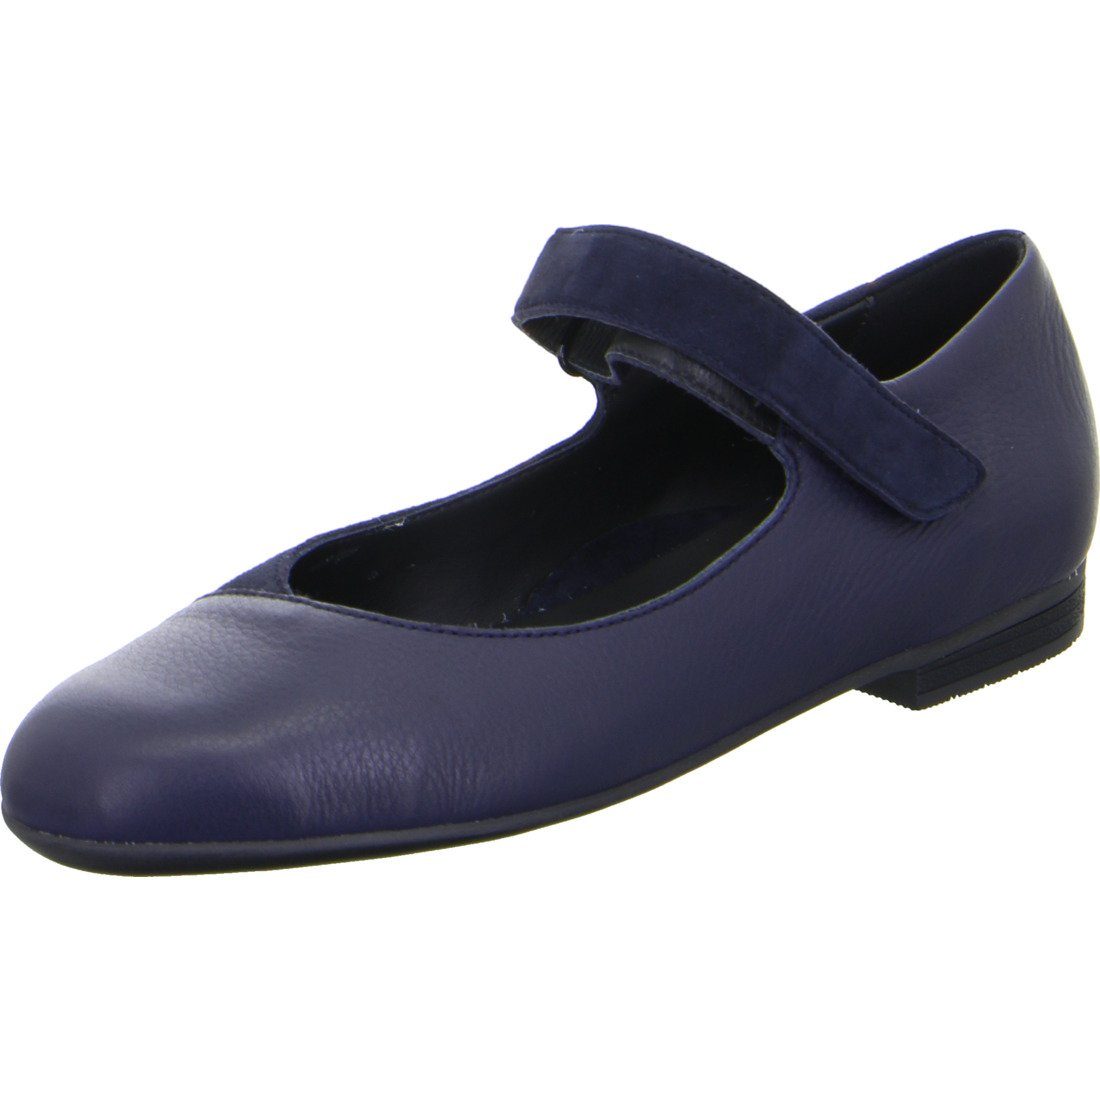 Ara Ara Schuhe, Ballerina Sardinia - Leder Damen Ballerina blau 049761